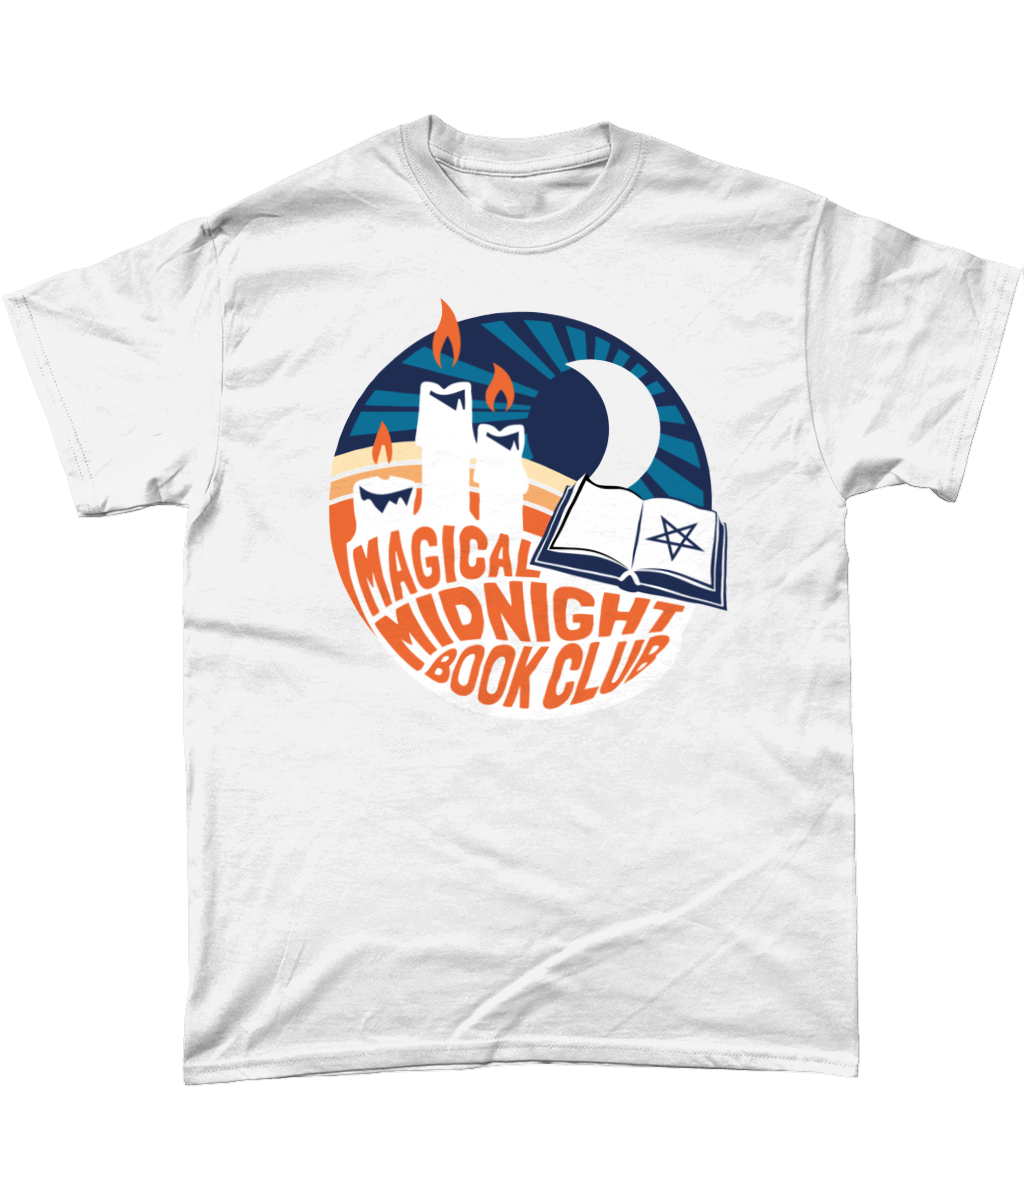 Magical Midnight Book Club T-Shirt